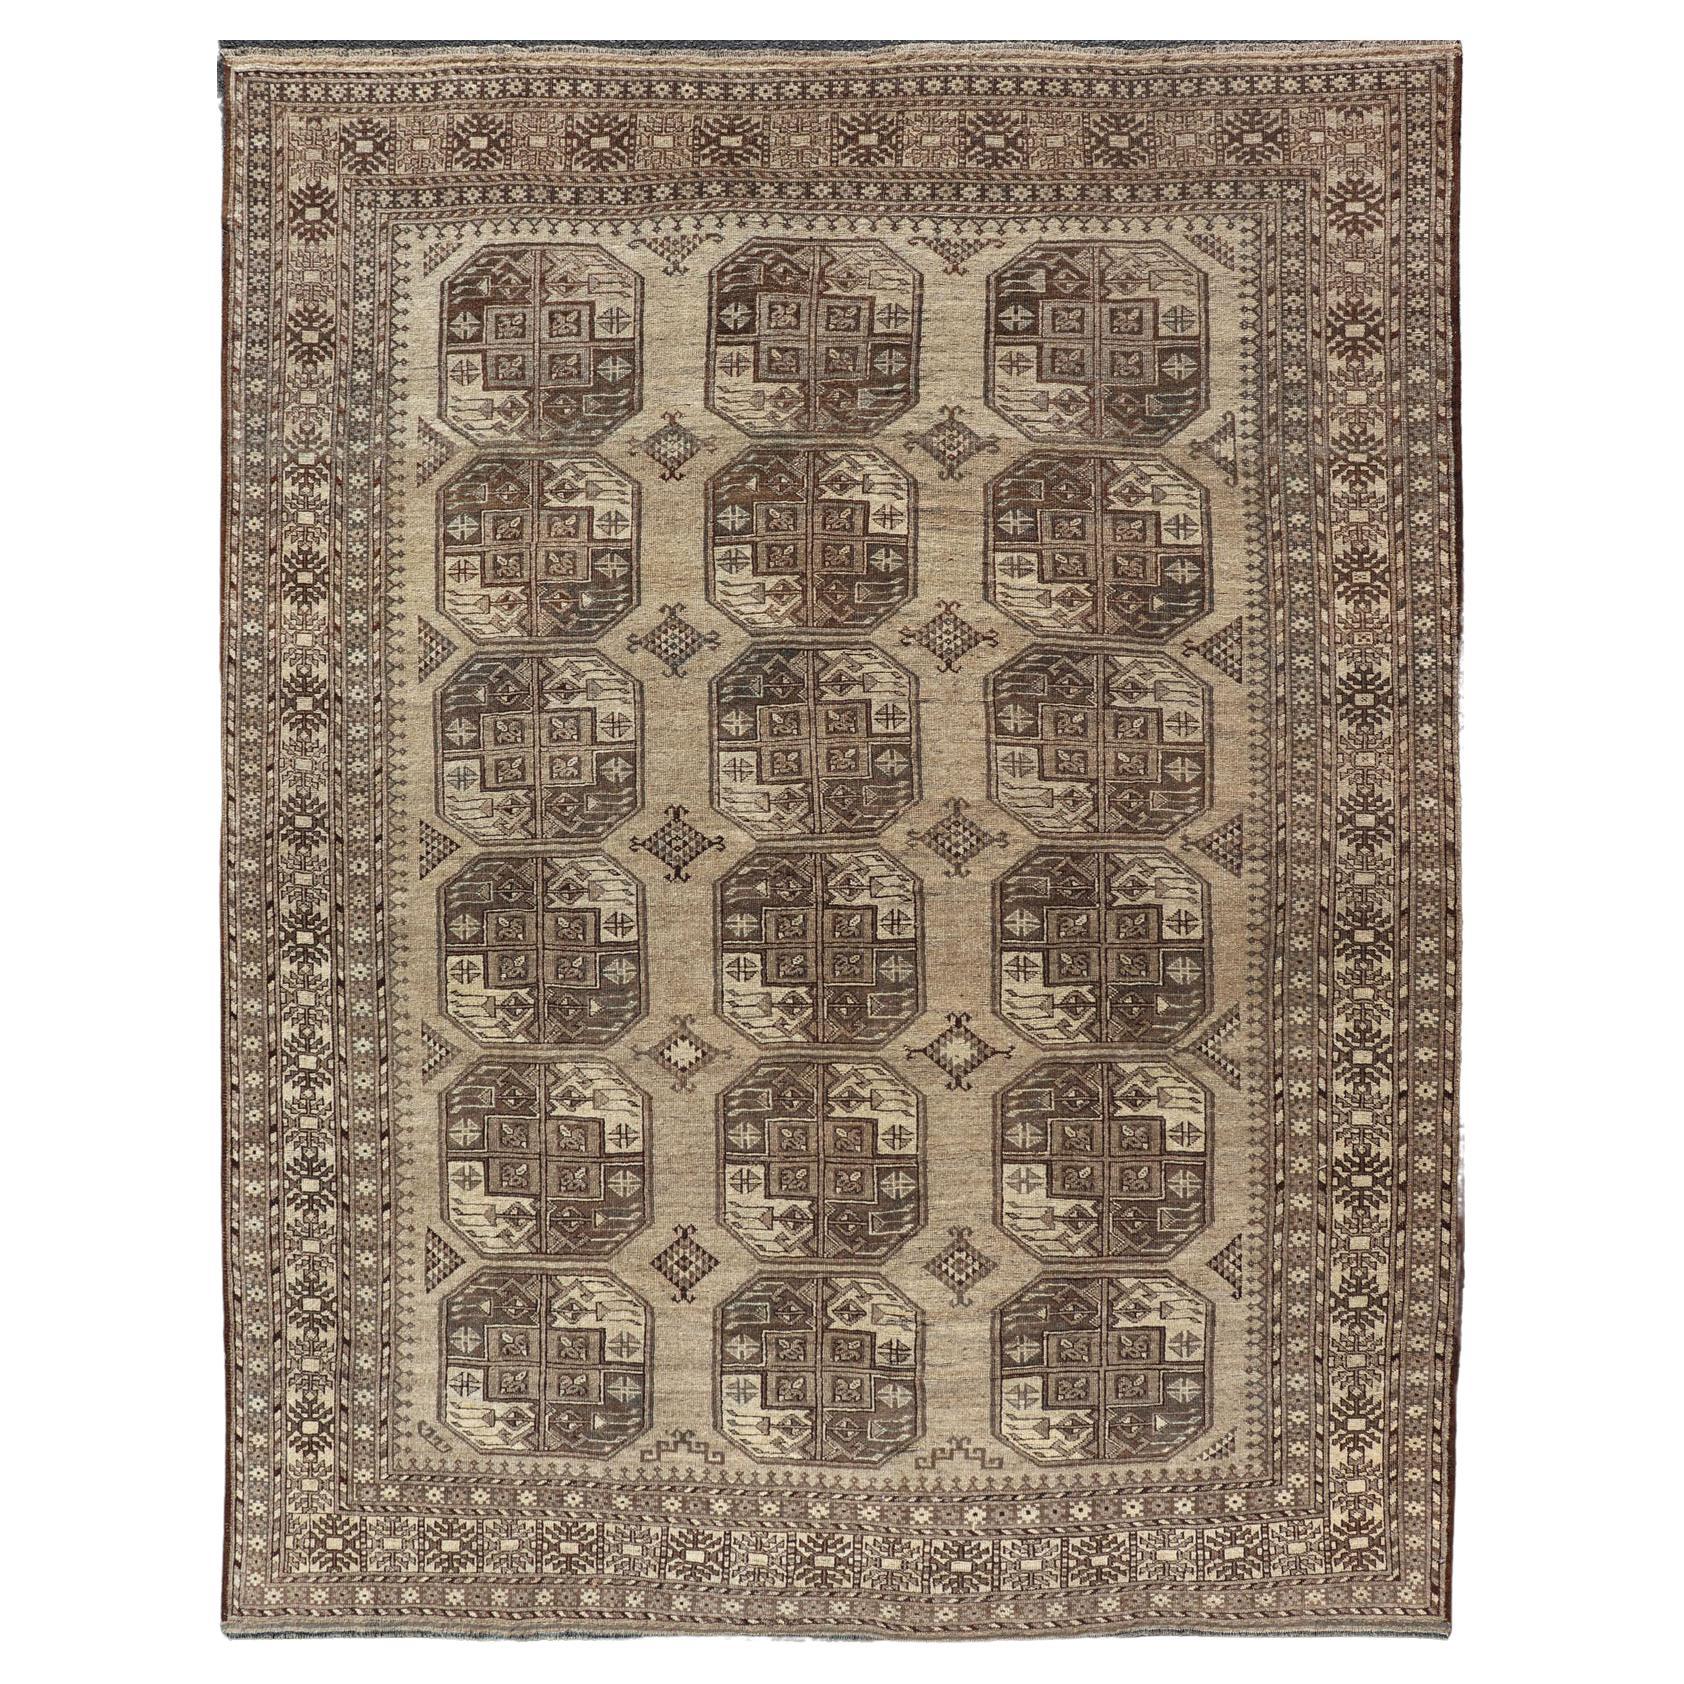 Handgeknüpfter Turkomen Ersari-Teppich aus Wolle mit sich wiederholendem Gul-Design